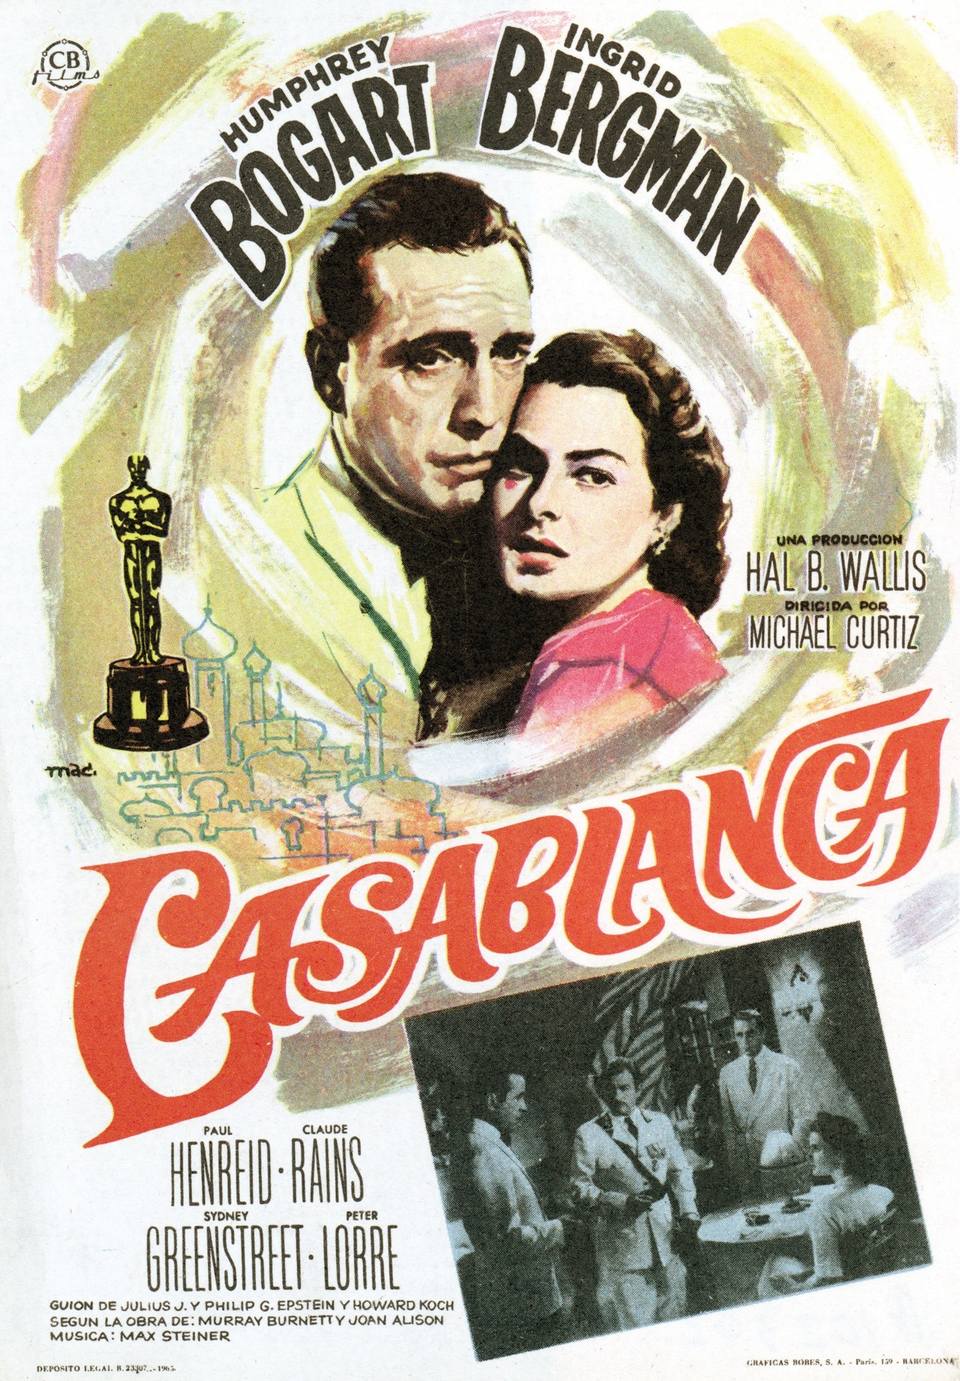 Film Casablanca